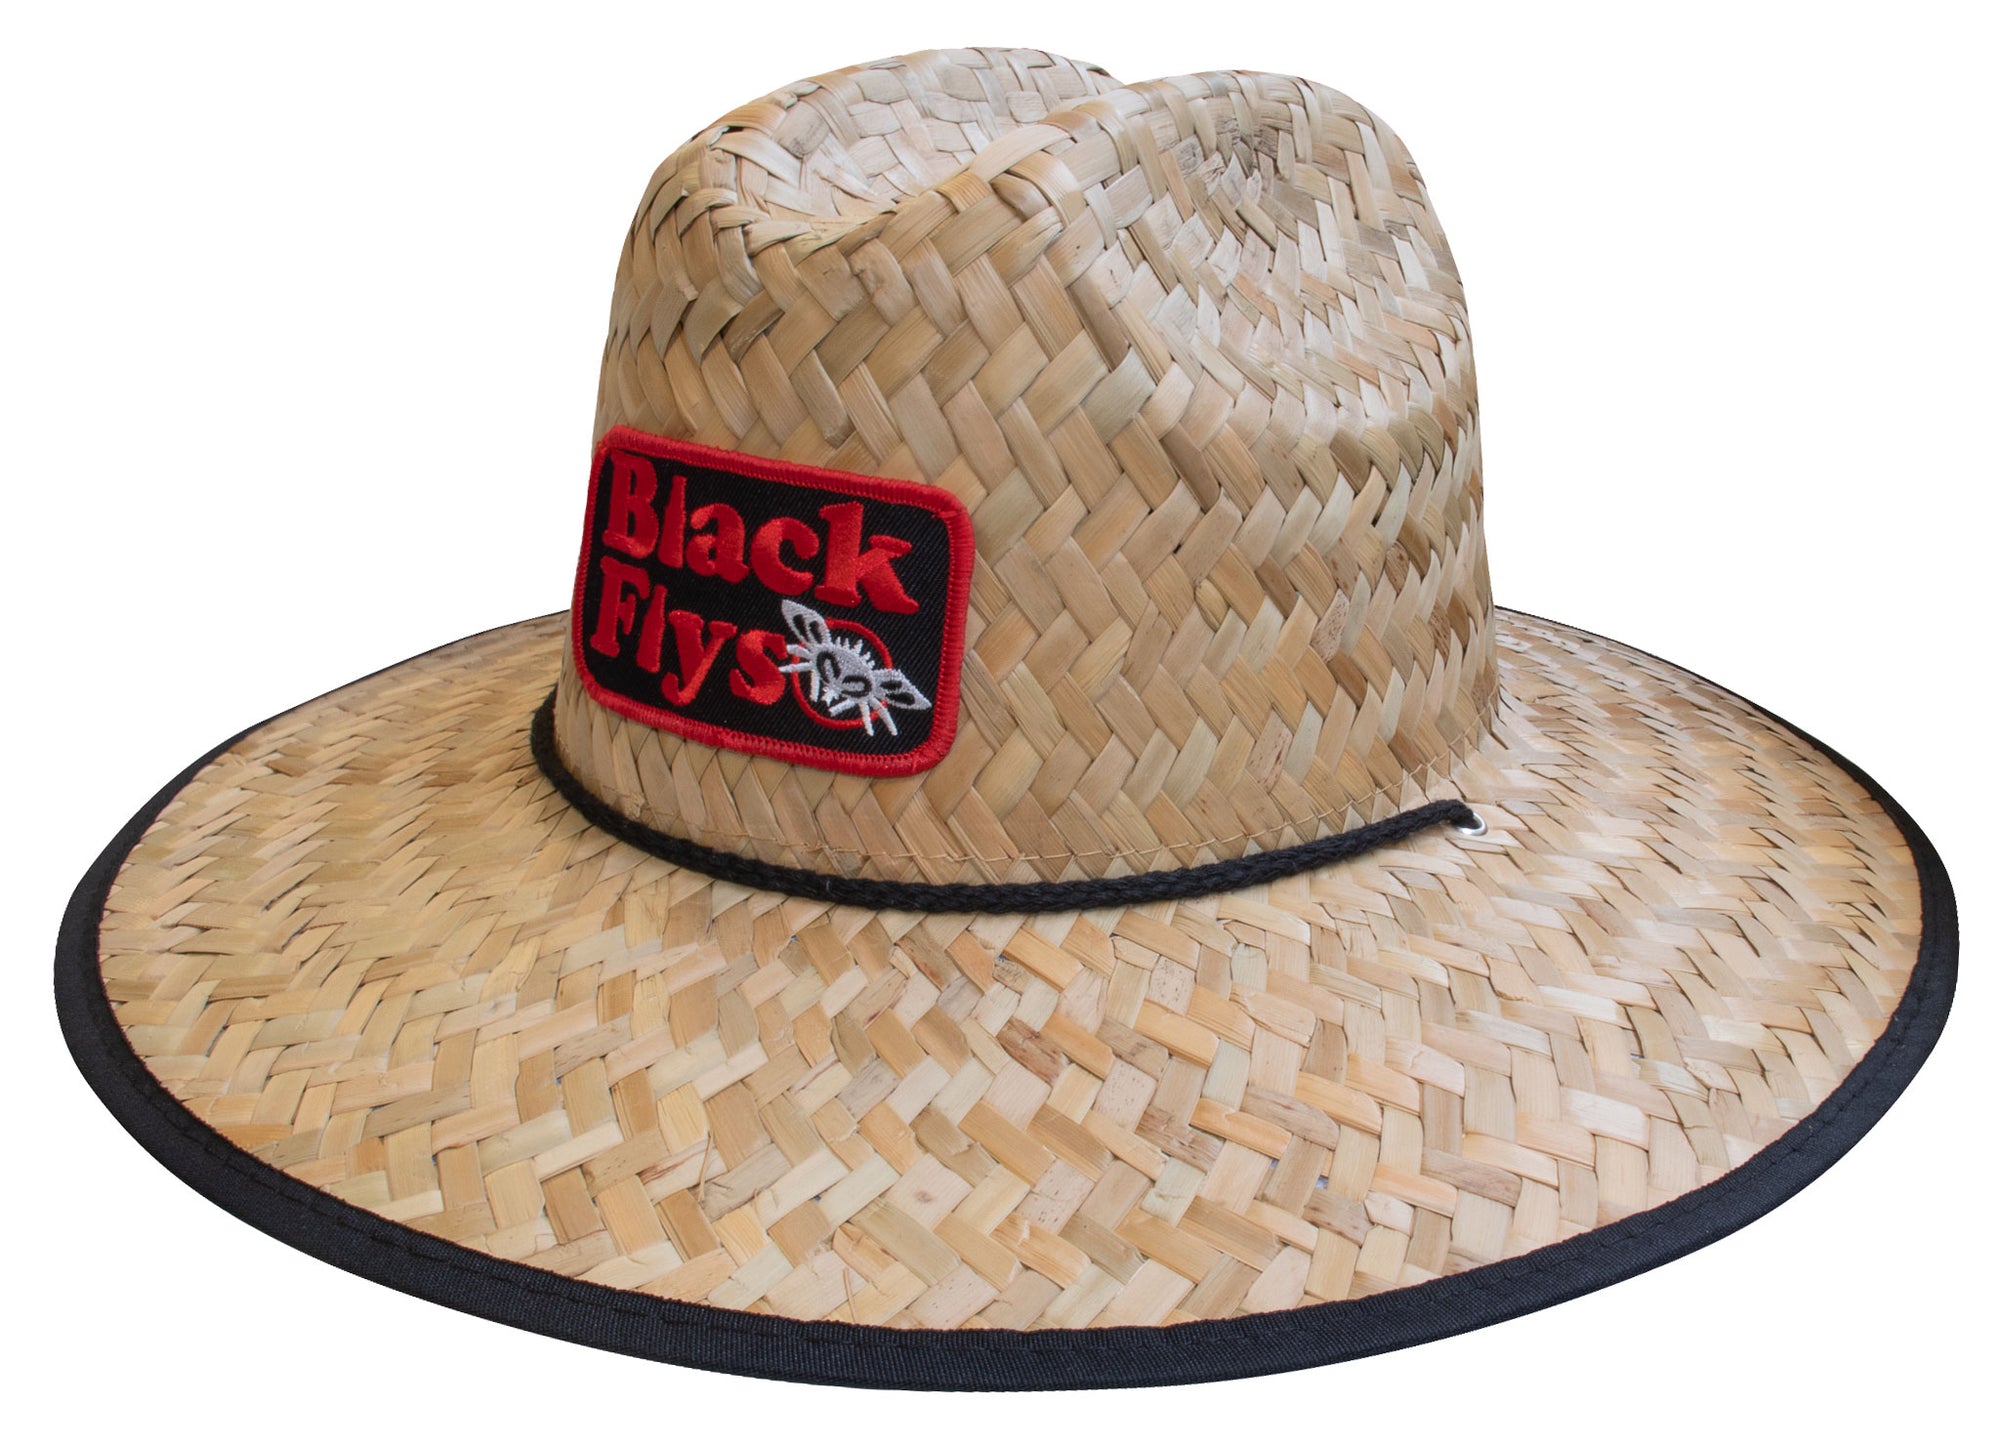 Black Flys Pardy Time Straw Hat - BlackFlys